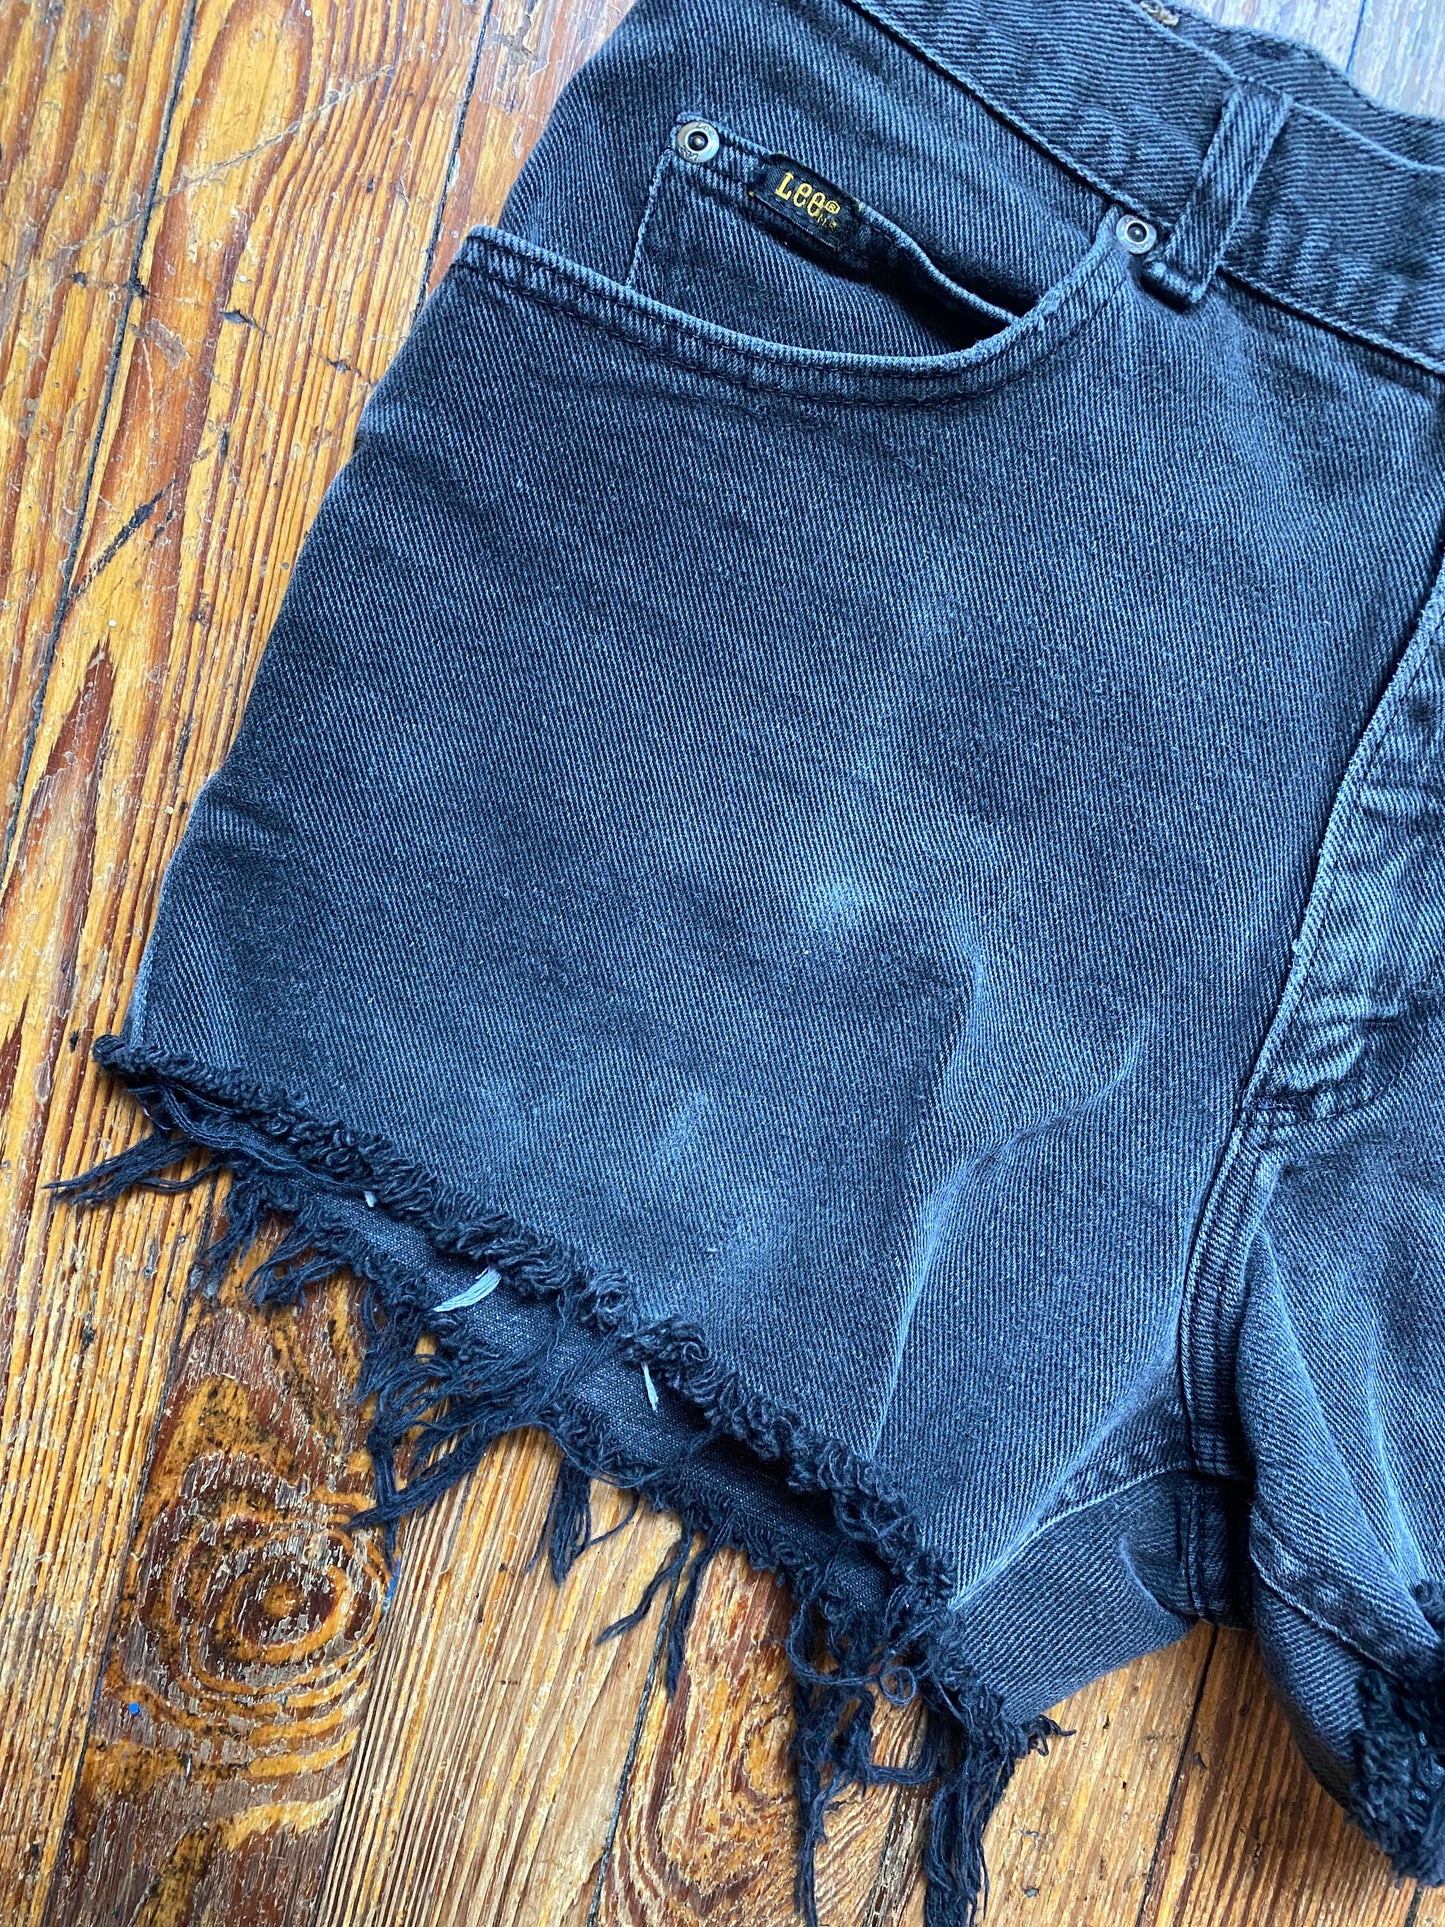 Vintage Lee Faded Black Denim Shorts